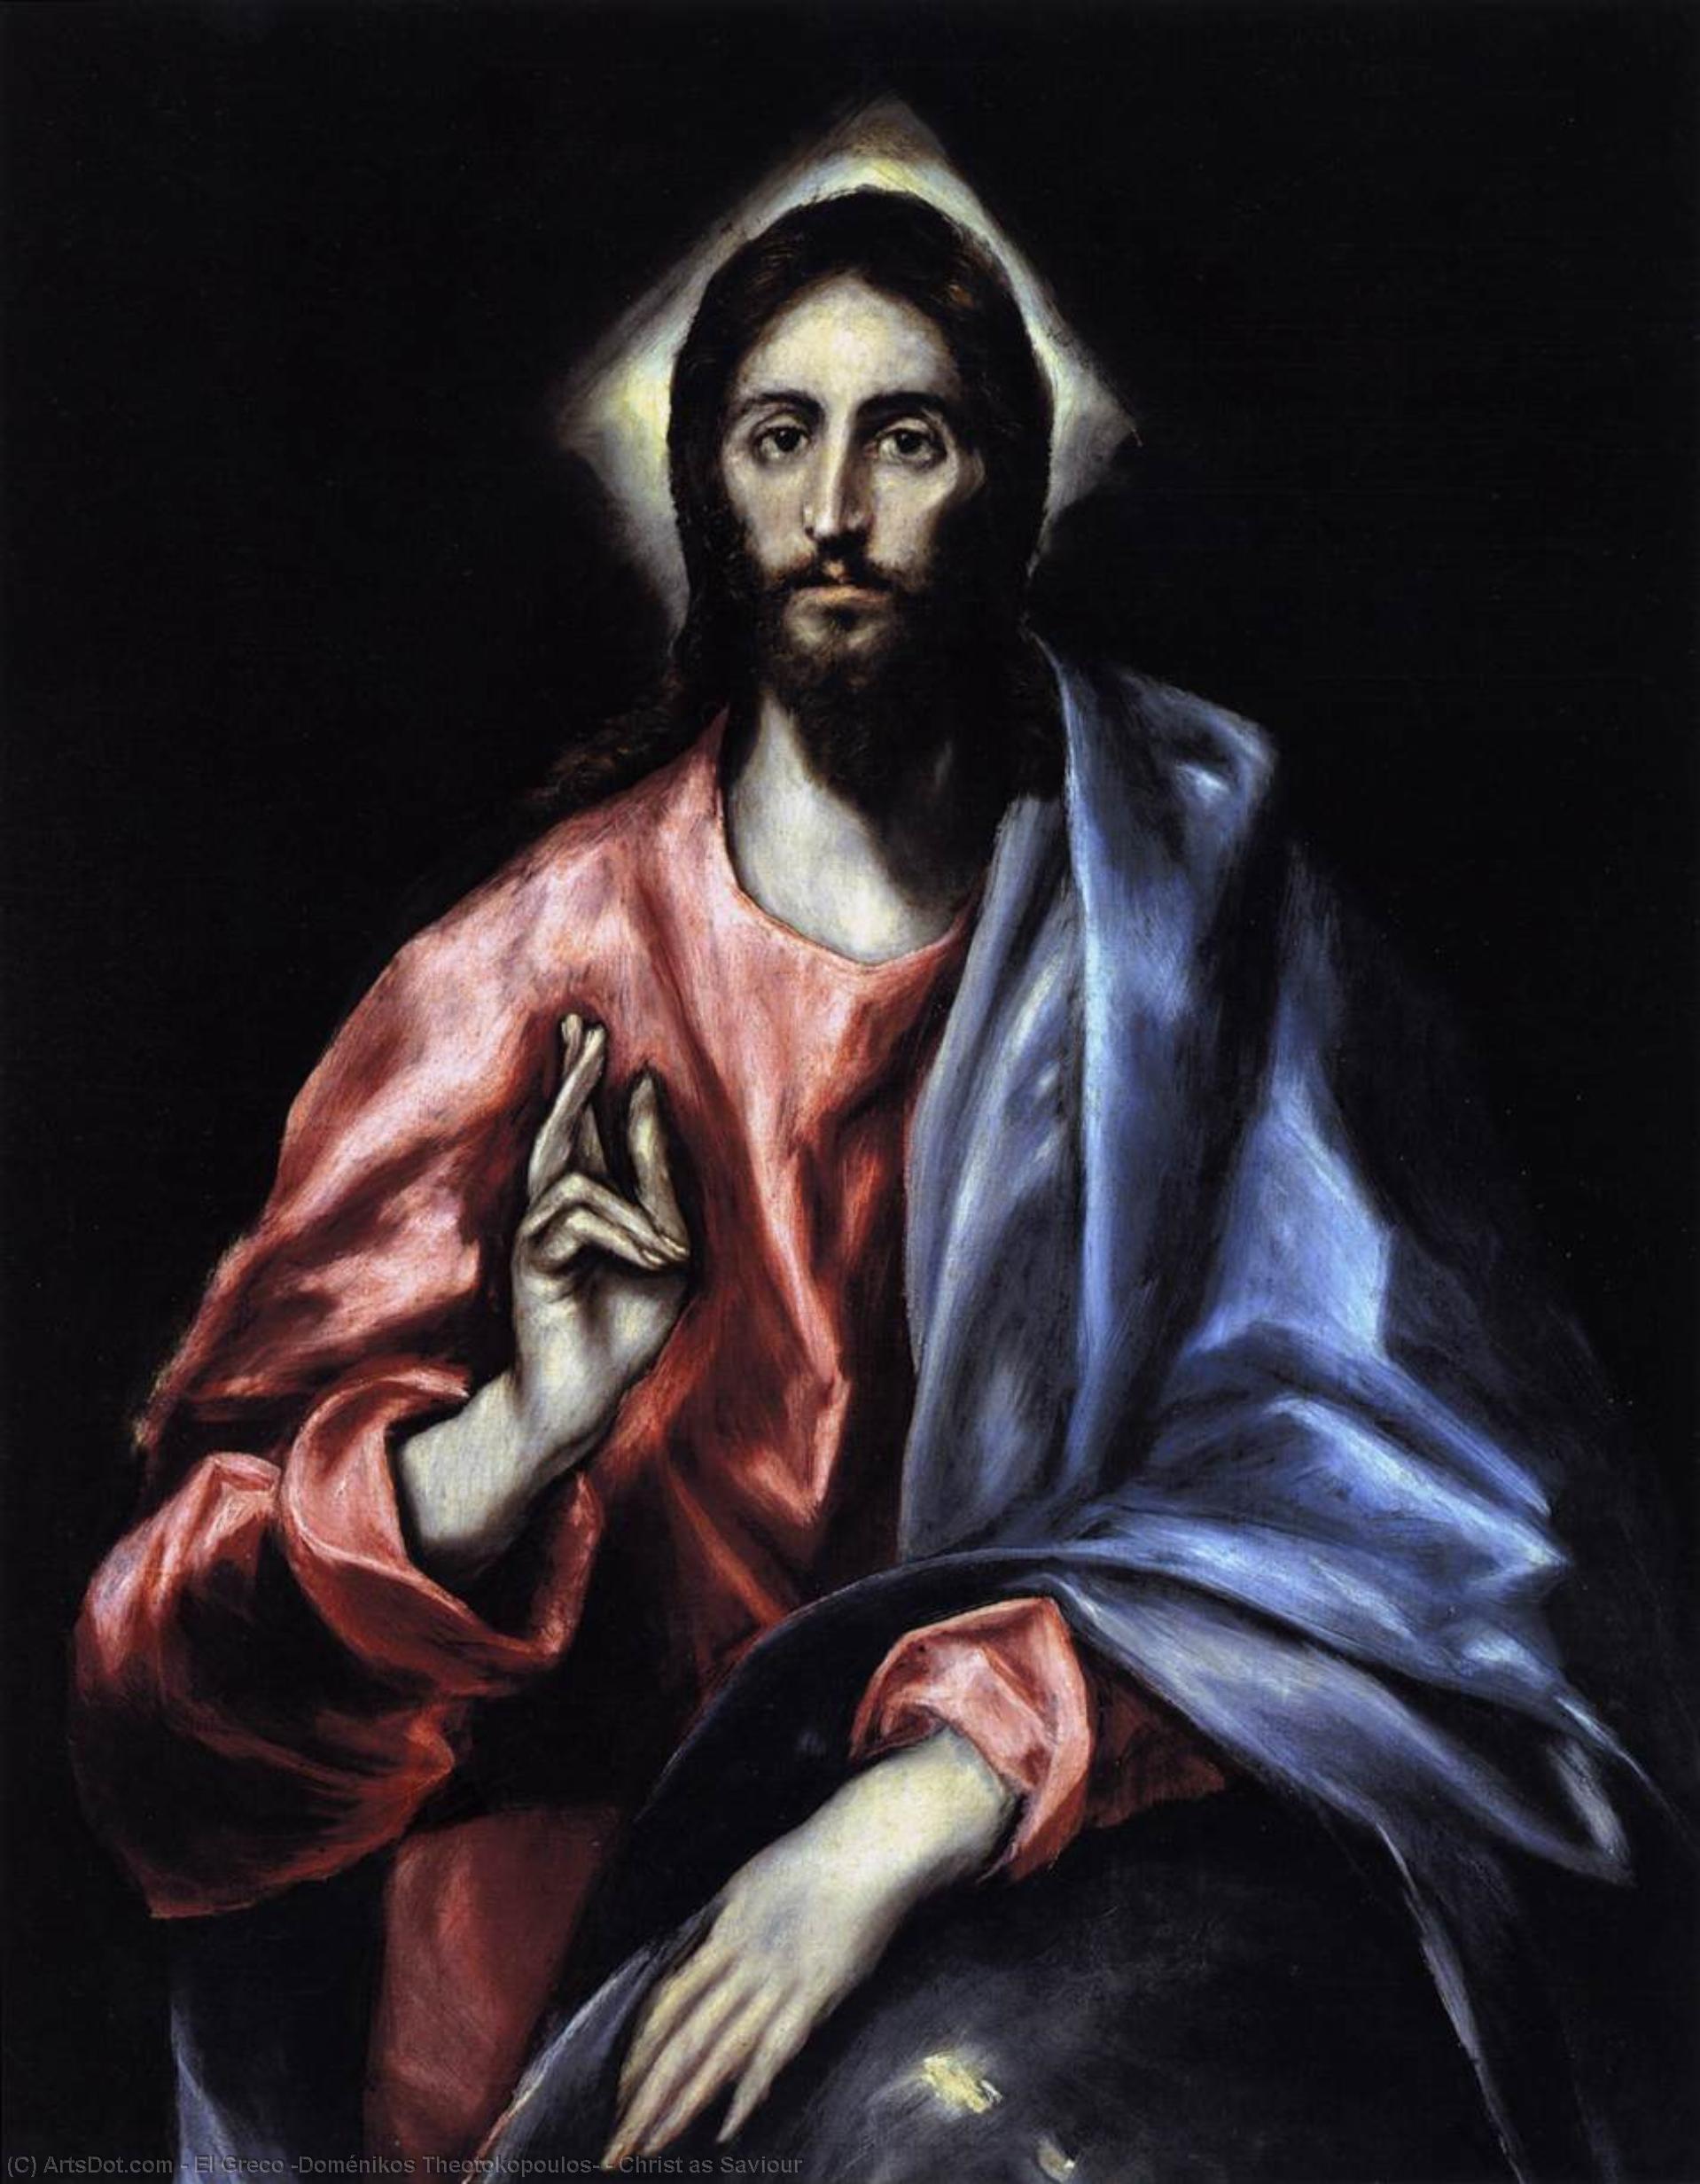 WikiOO.org - Энциклопедия изобразительного искусства - Живопись, Картины  El Greco (Doménikos Theotokopoulos) - Христос как Спаситель